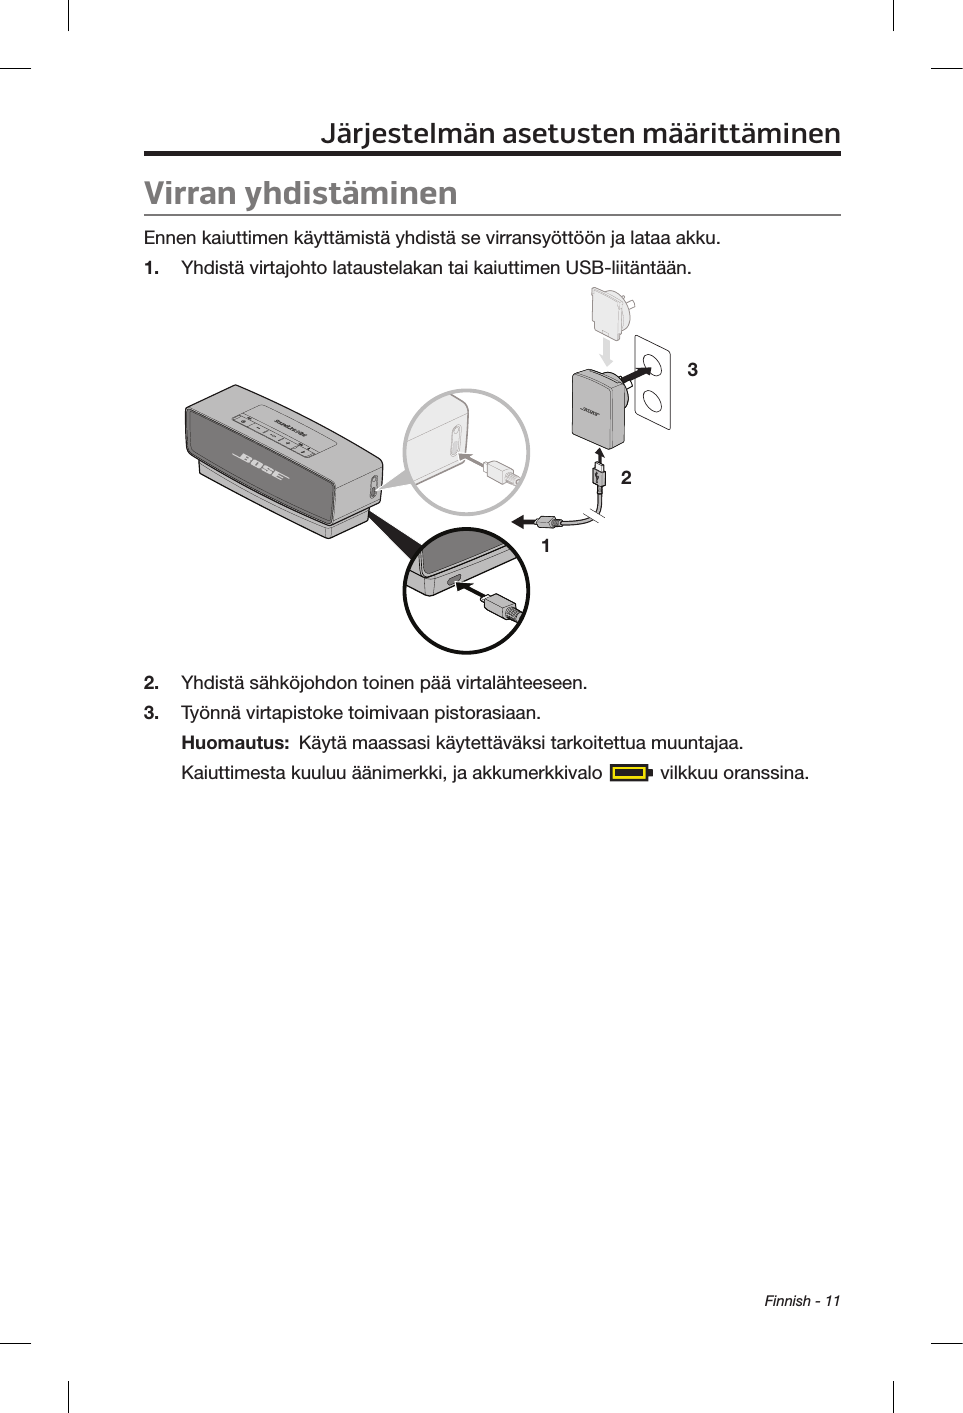 Finnish - 11Virran yhdistäminenEnnen kaiuttimen käyttämistä yhdistä se virransyöttöön ja lataa akku.1.  Yhdistä virtajohto lataustelakan tai kaiuttimen USB-liitäntään.1 232.  Yhdistä sähköjohdon toinen pää virtalähteeseen.3.  Työnnä virtapistoke toimivaan pistorasiaan. Huomautus:  Käytä maassasi käytettäväksi tarkoitettua muuntajaa.Kaiuttimesta kuuluu äänimerkki, ja akkumerkkivalo   vilkkuu oranssina.Järjestelmän asetusten määrittäminen